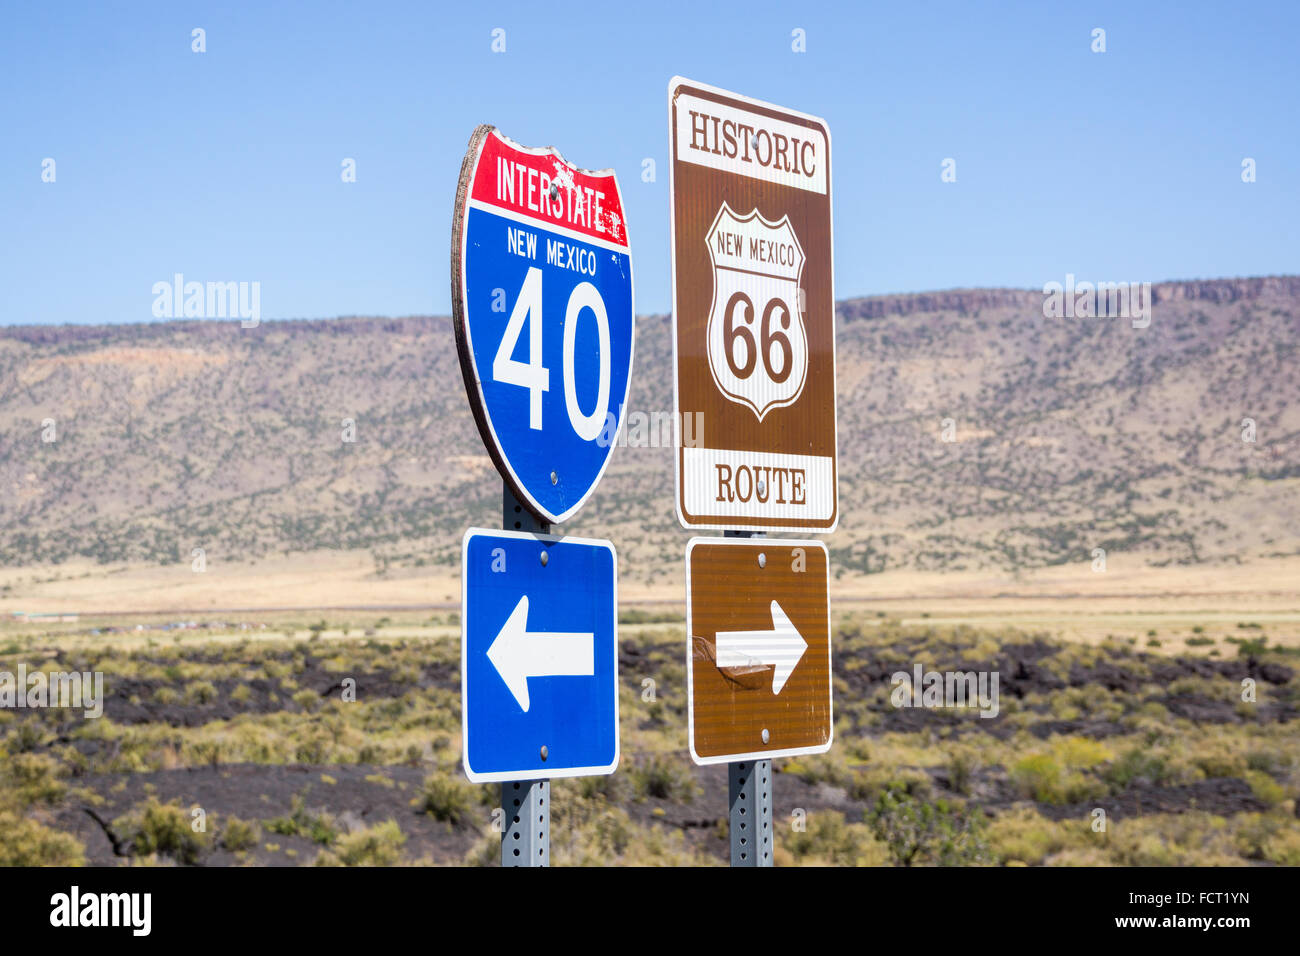 Kombinierte Zeichen Interstate I40 zu linken Historic Route 66 nach rechts  New Mexico, USA Stockfotografie - Alamy